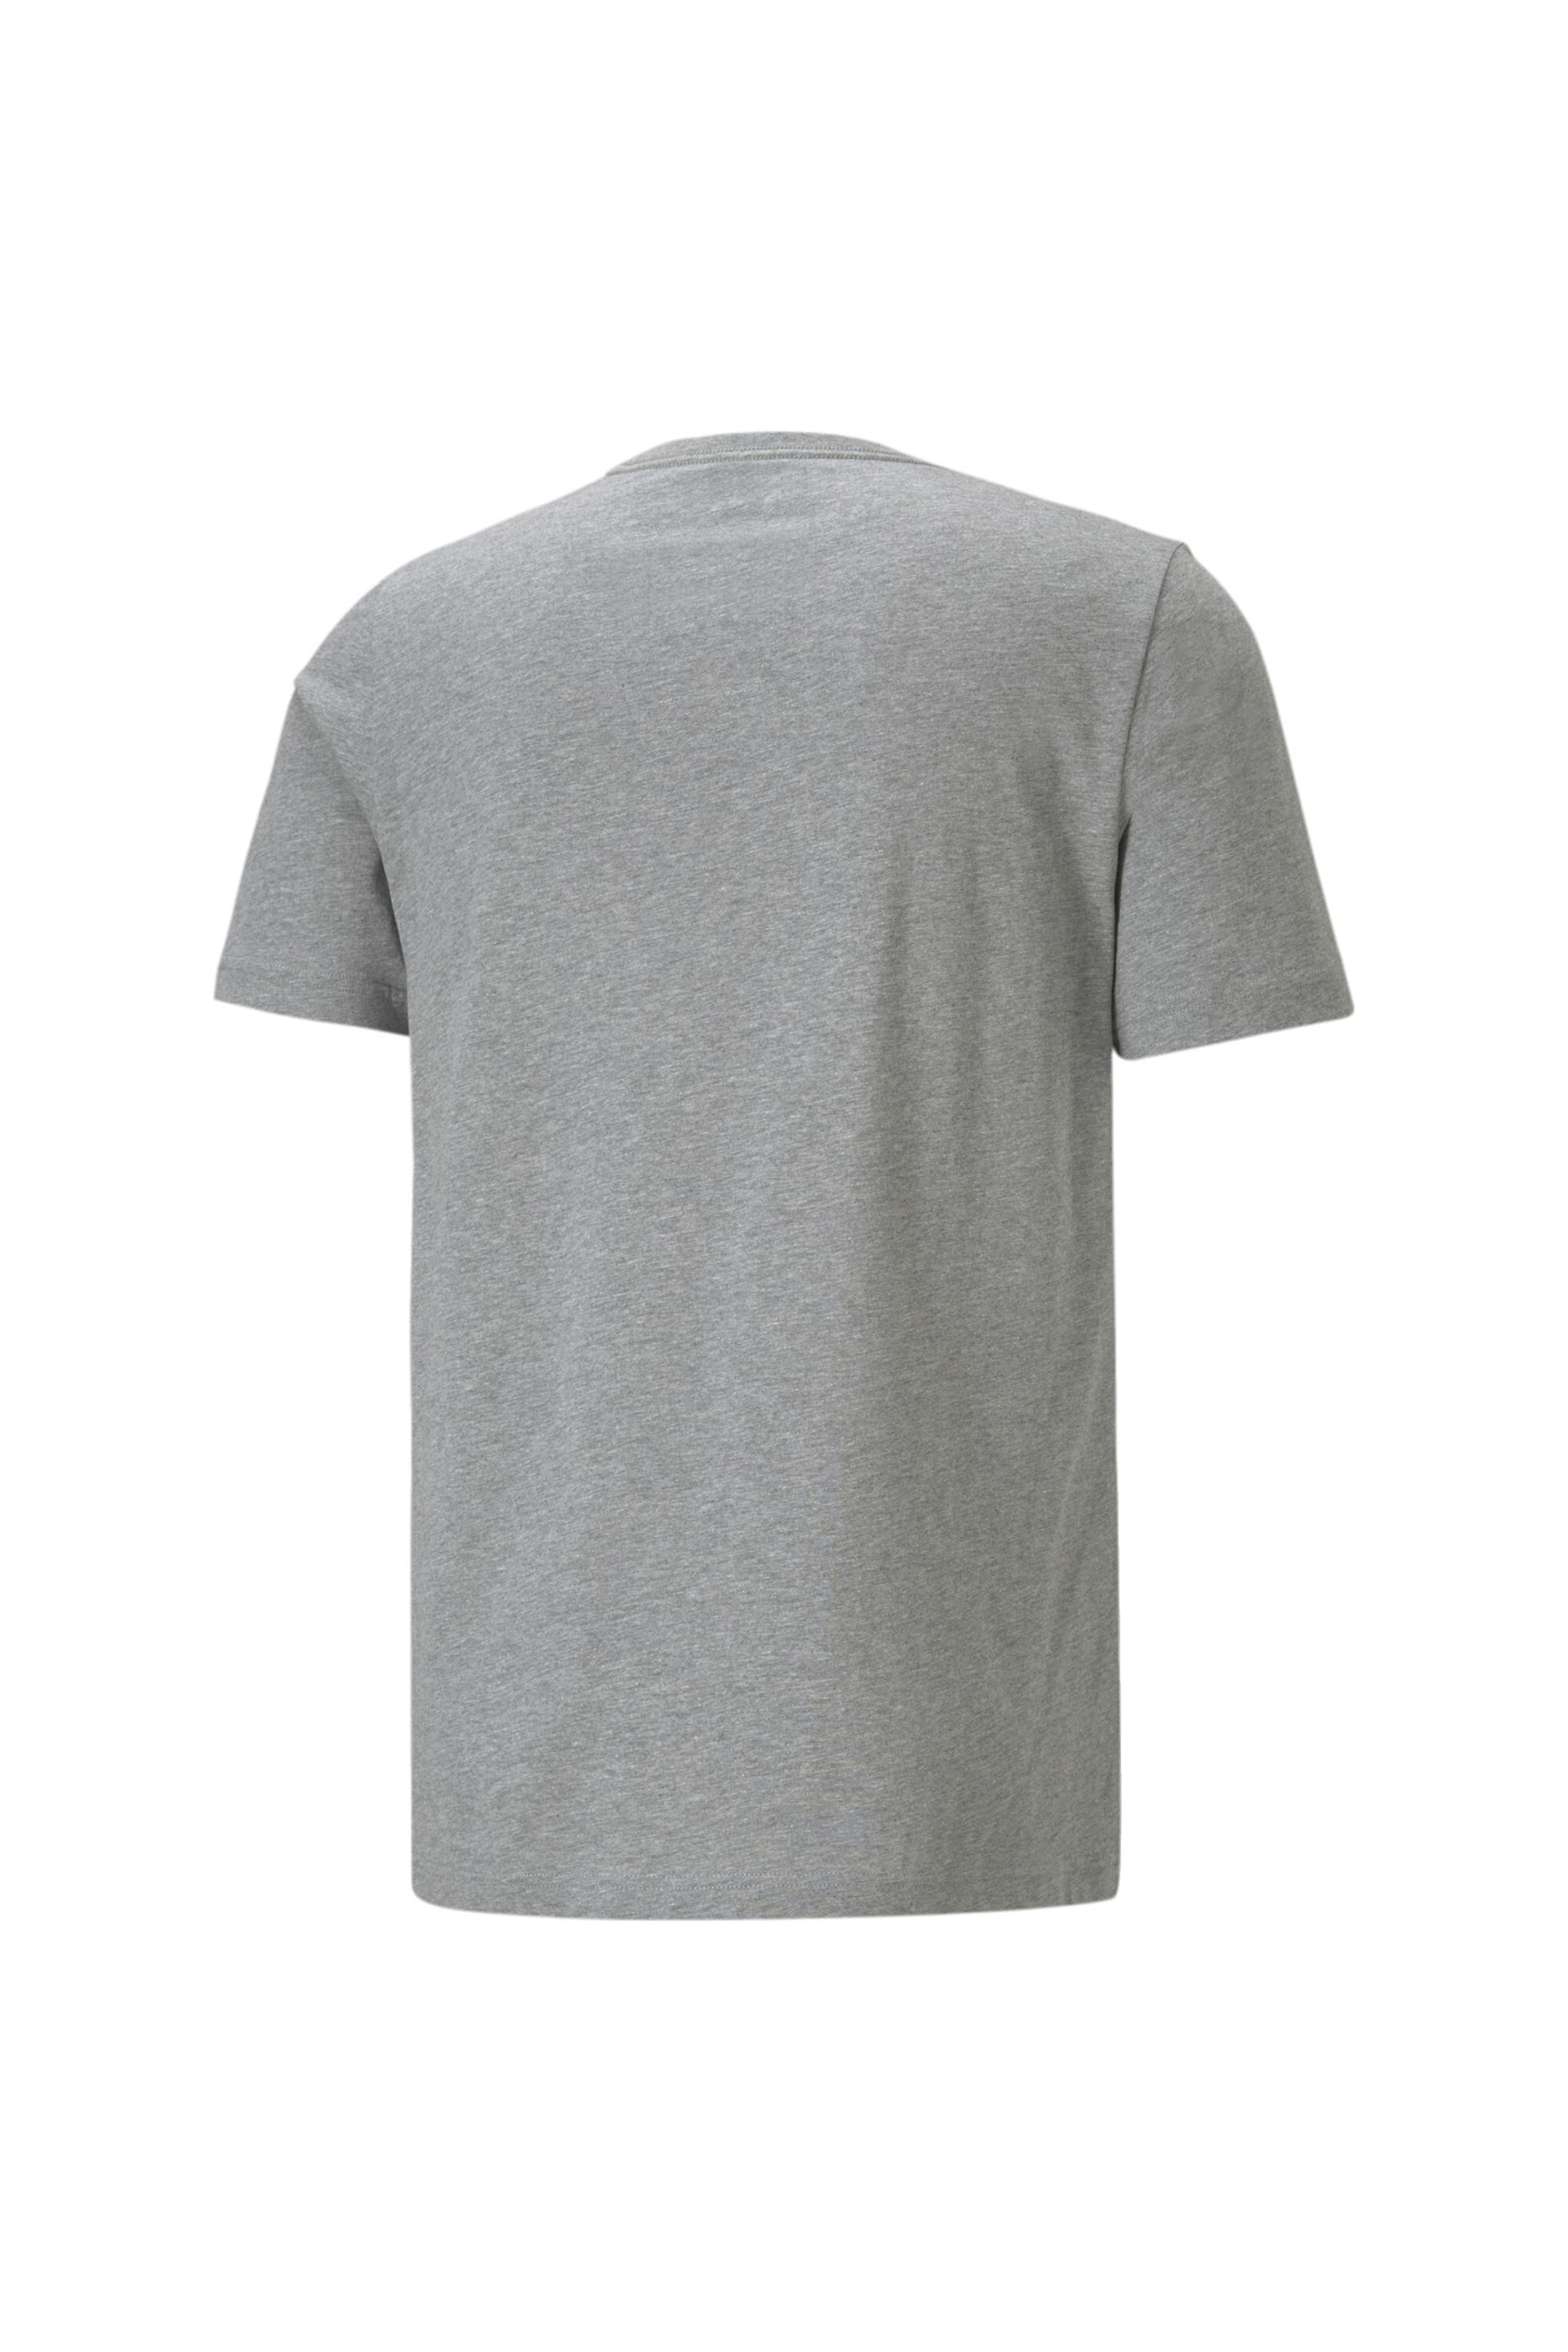 Puma Grey Mens Essentials Small Logo T-Shirt - Image 5 of 5